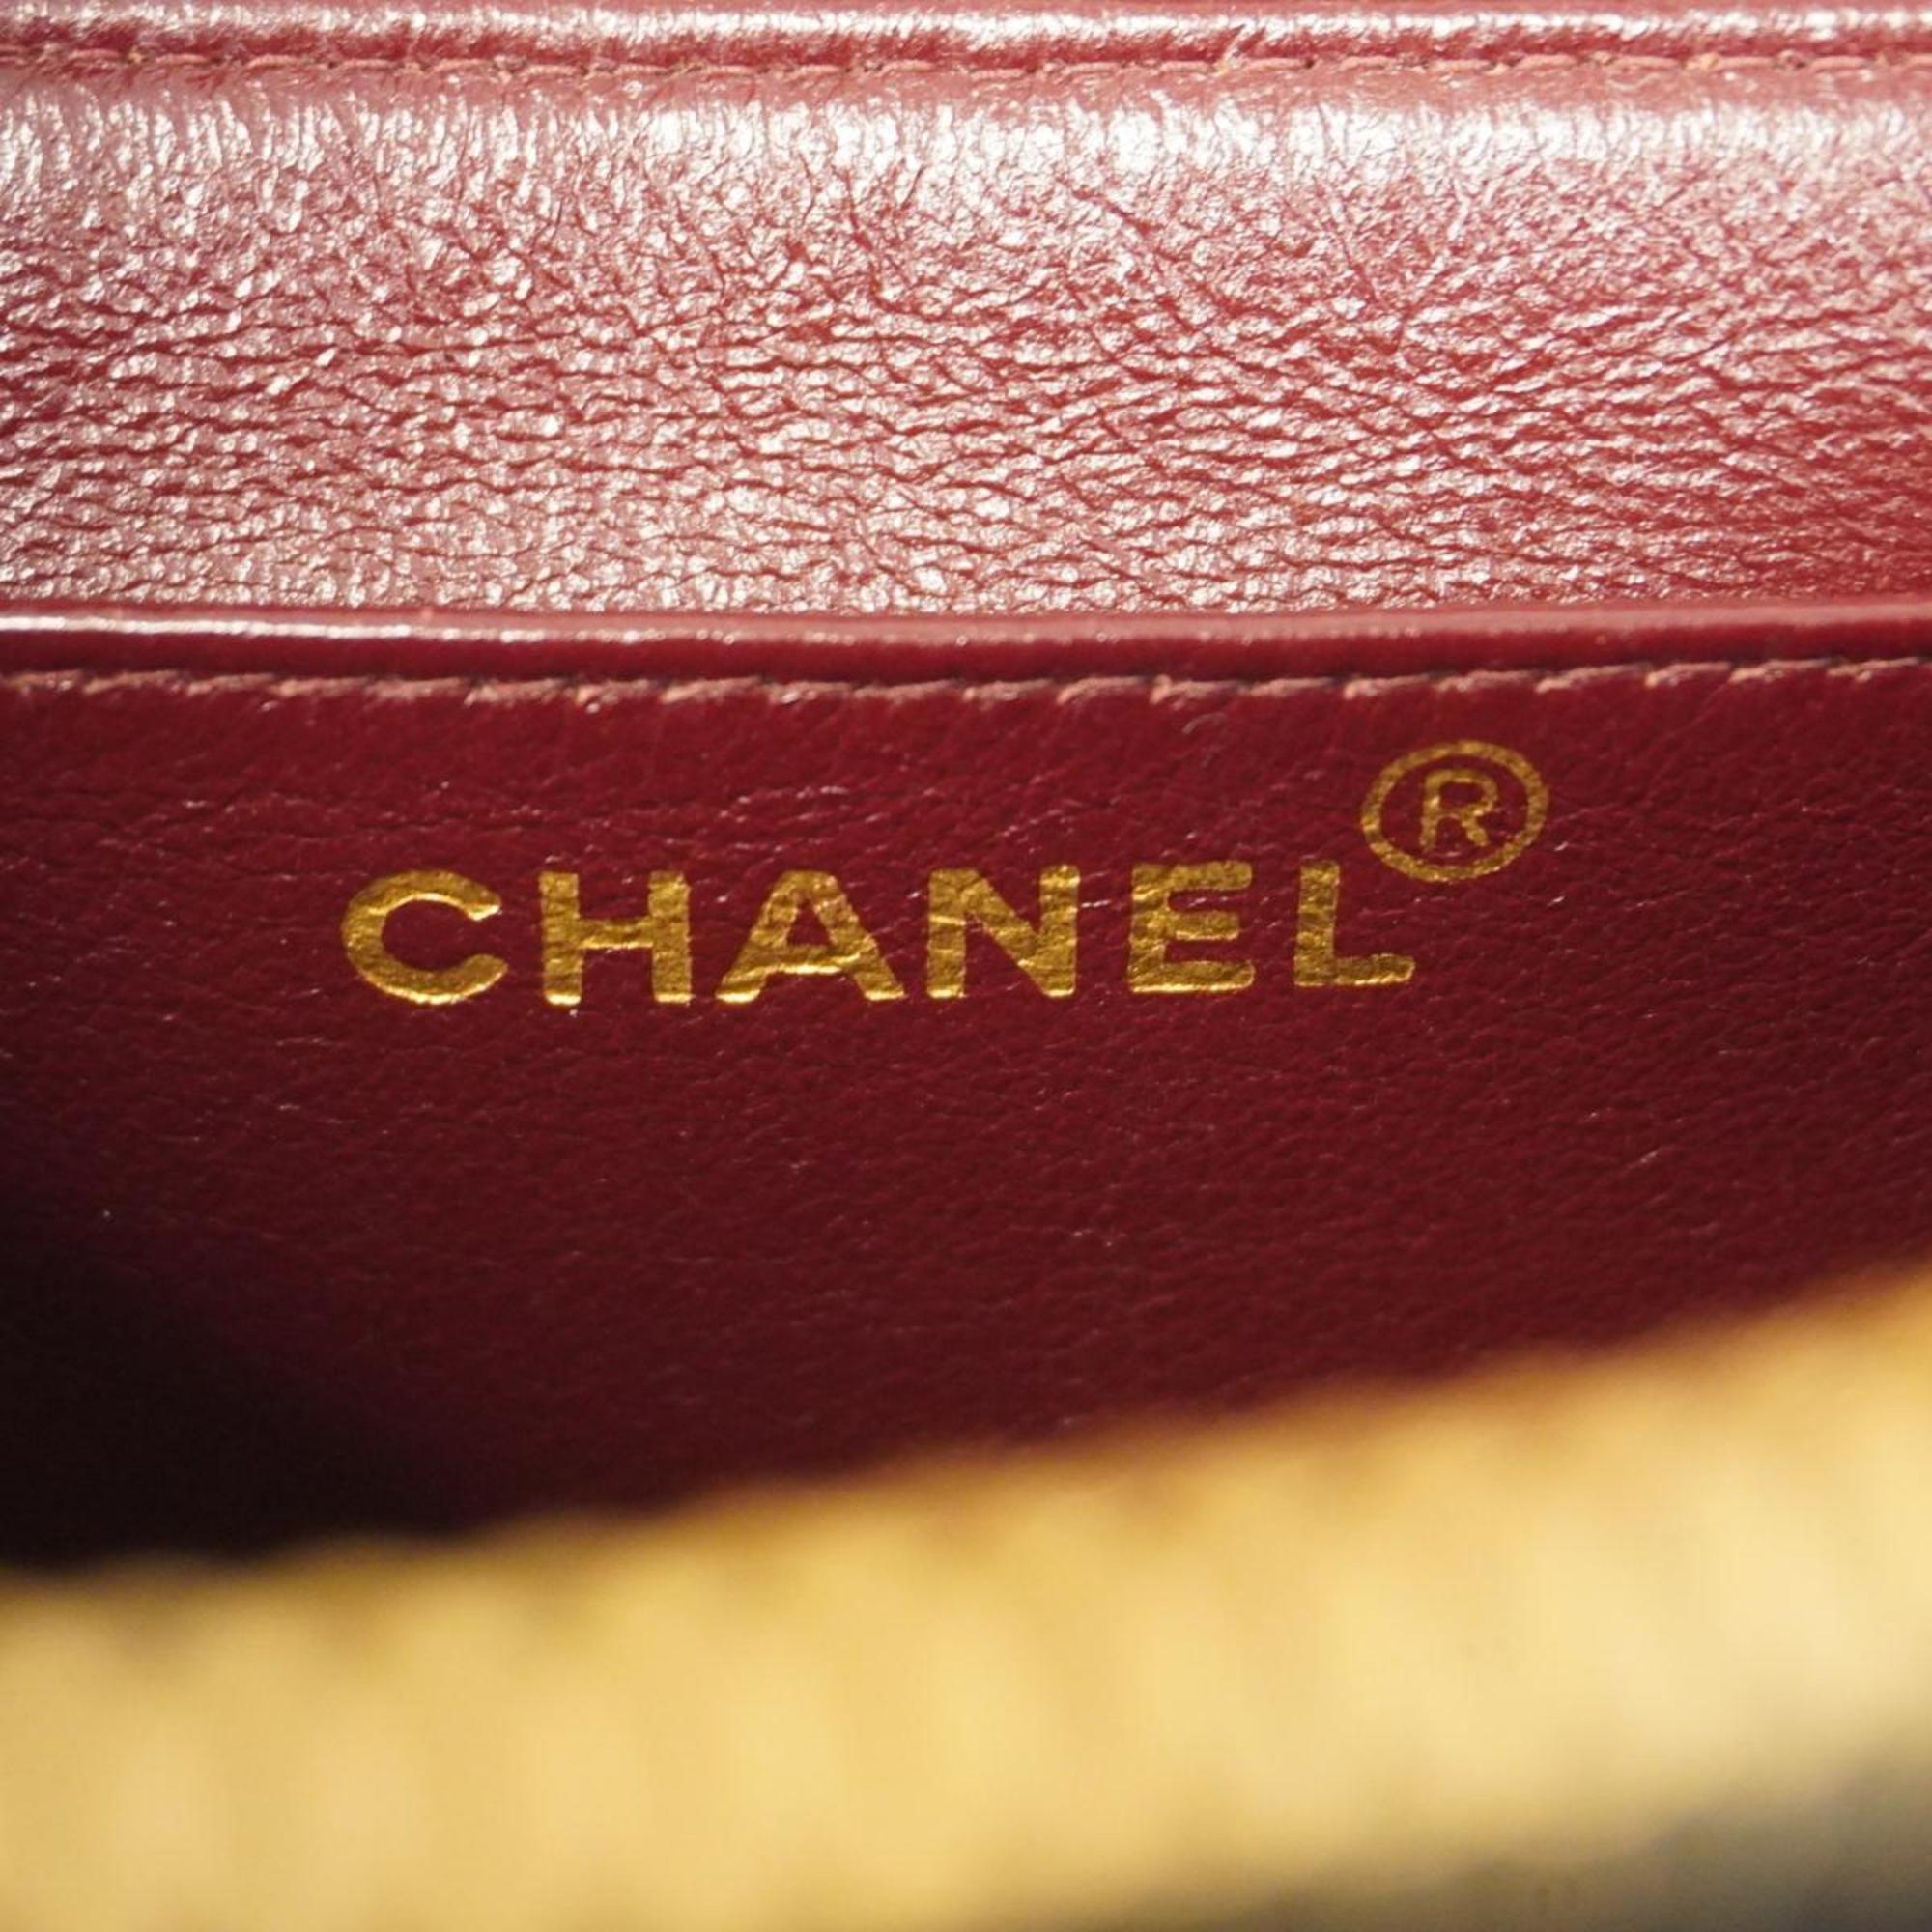 シャネル(Chanel) シャネル リュックサック マトラッセ ラムスキン ブラック   レディース